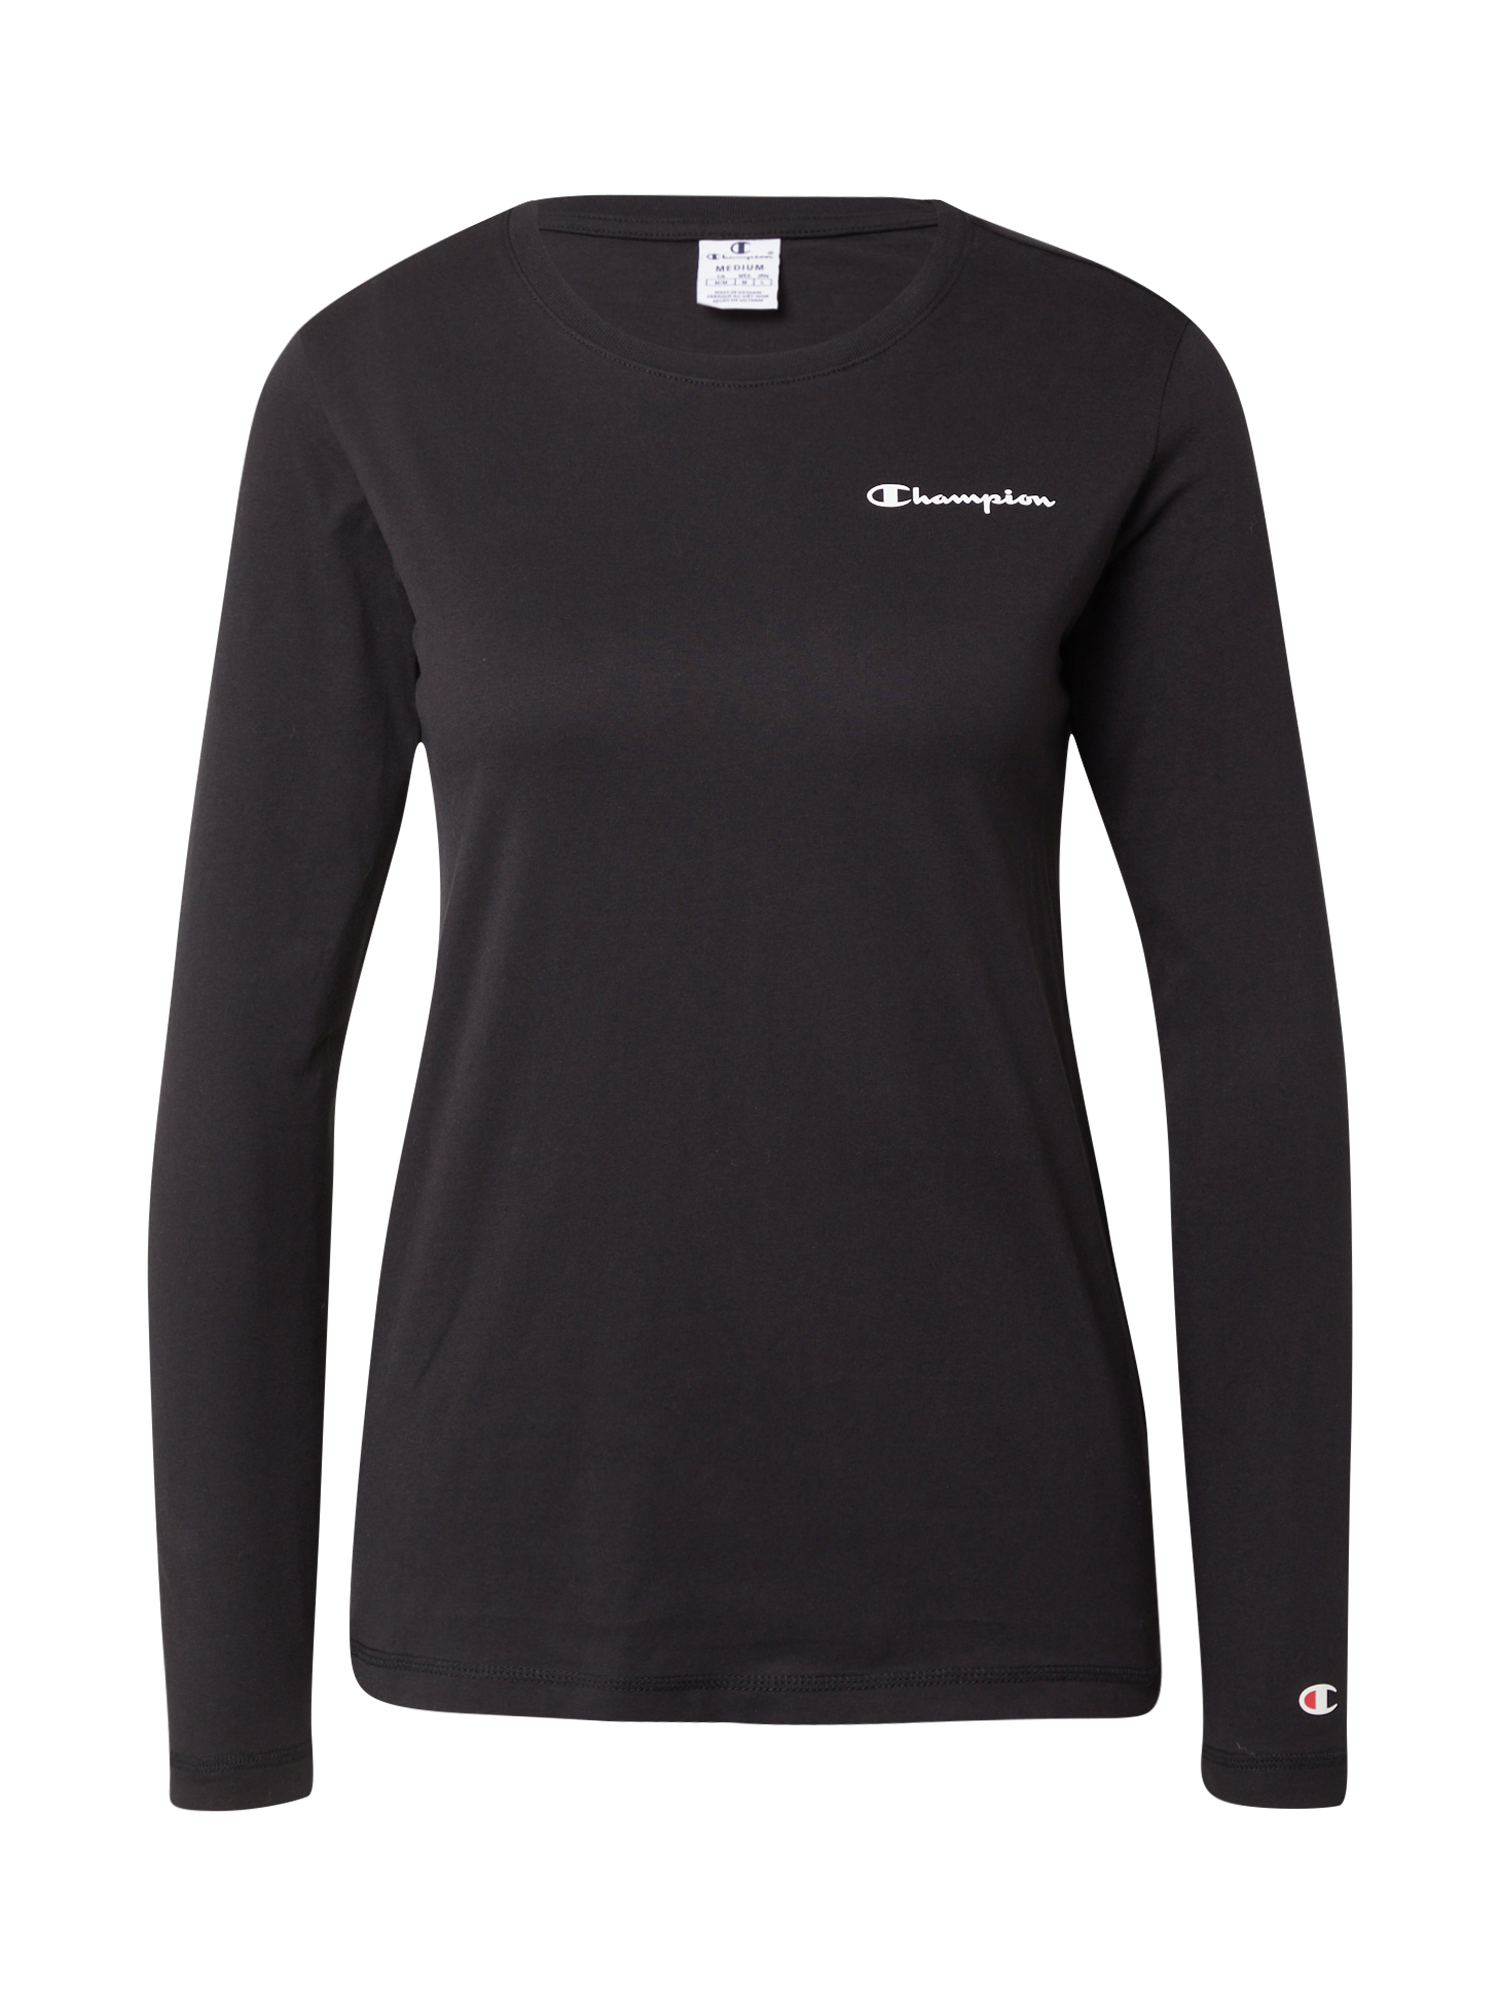 Odzież DEKZ8 Champion Authentic Athletic Apparel T-Shirt w kolorze Czarnym 